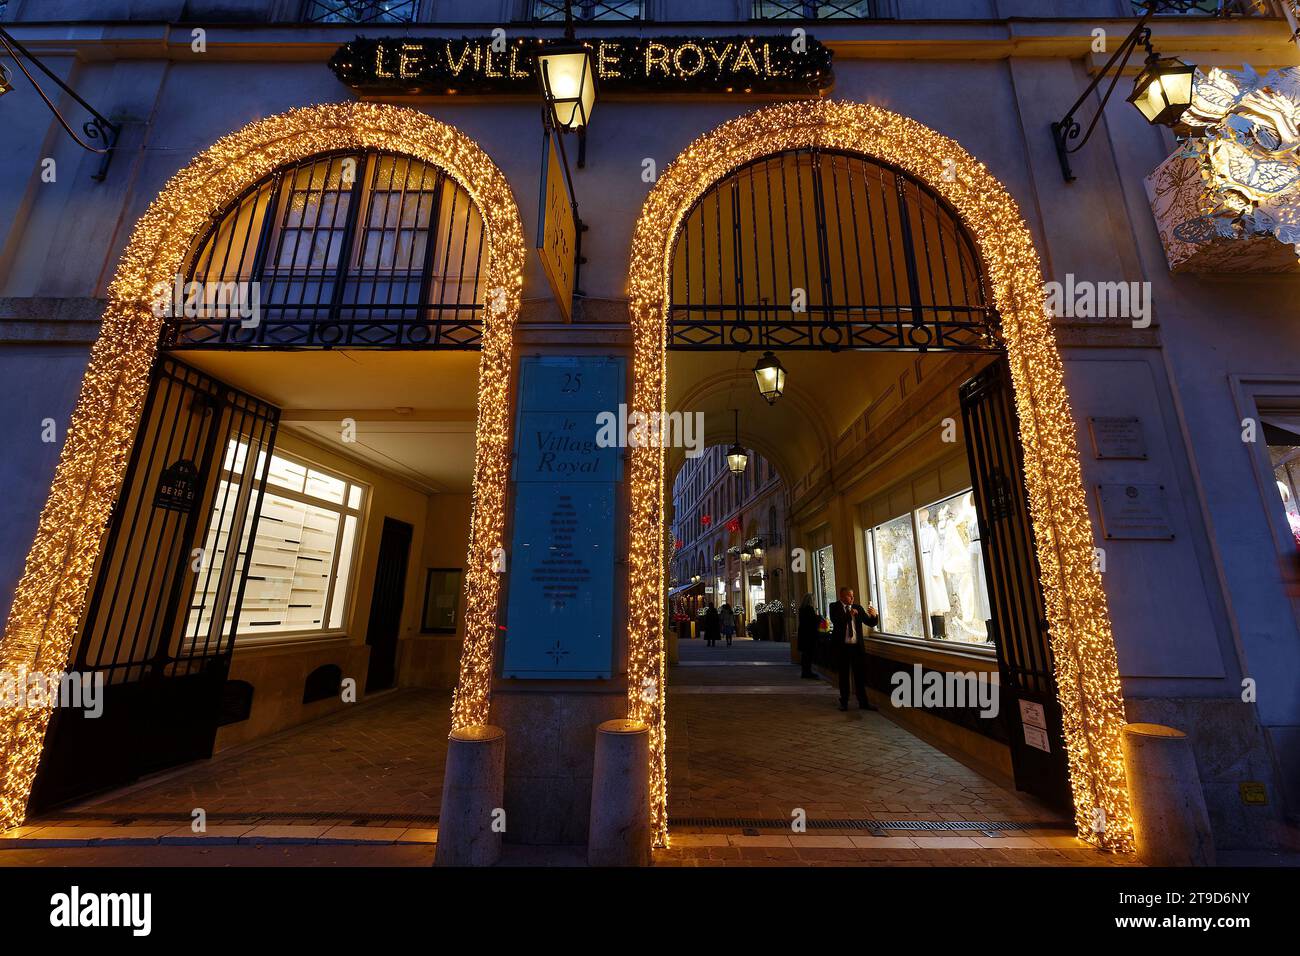 Village Royal est un passage chic à Paris rempli de boutiques de luxe. Il est situé dans le quartier de la Madeleine à Paris, en France. Banque D'Images